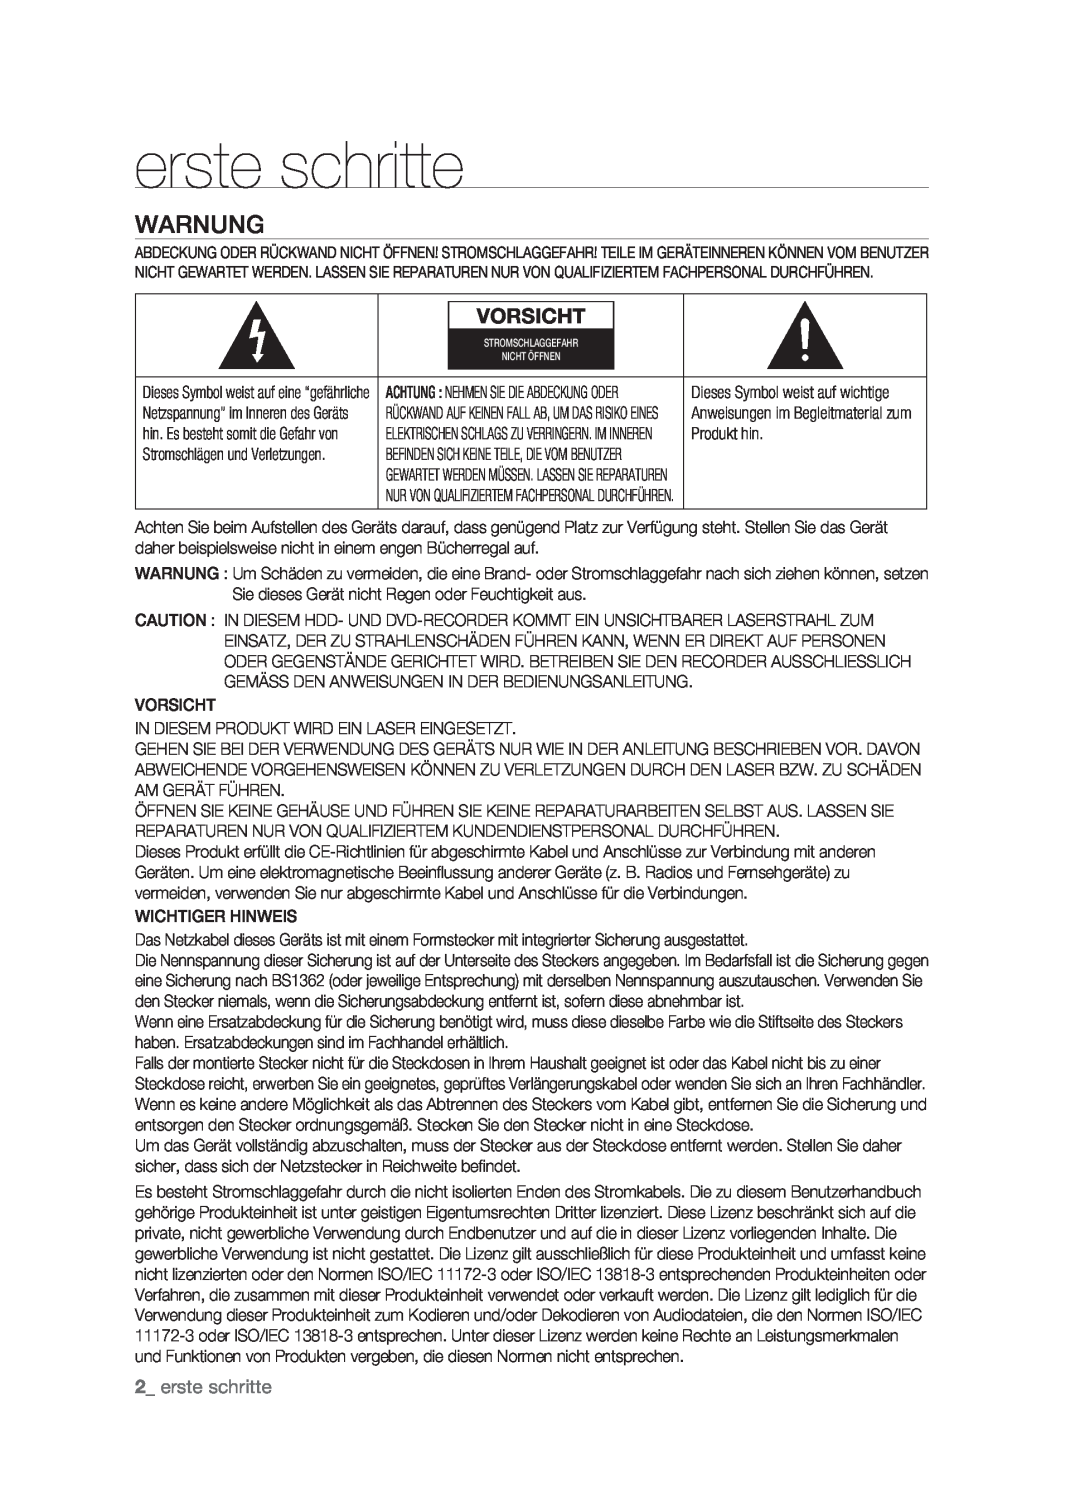 Samsung DVD-HR773/XEG, DVD-HR773/XEN, DVD-HR773/XEB, DVD-HR773/AUS manual erste schritte, Warnung, Vorsicht 